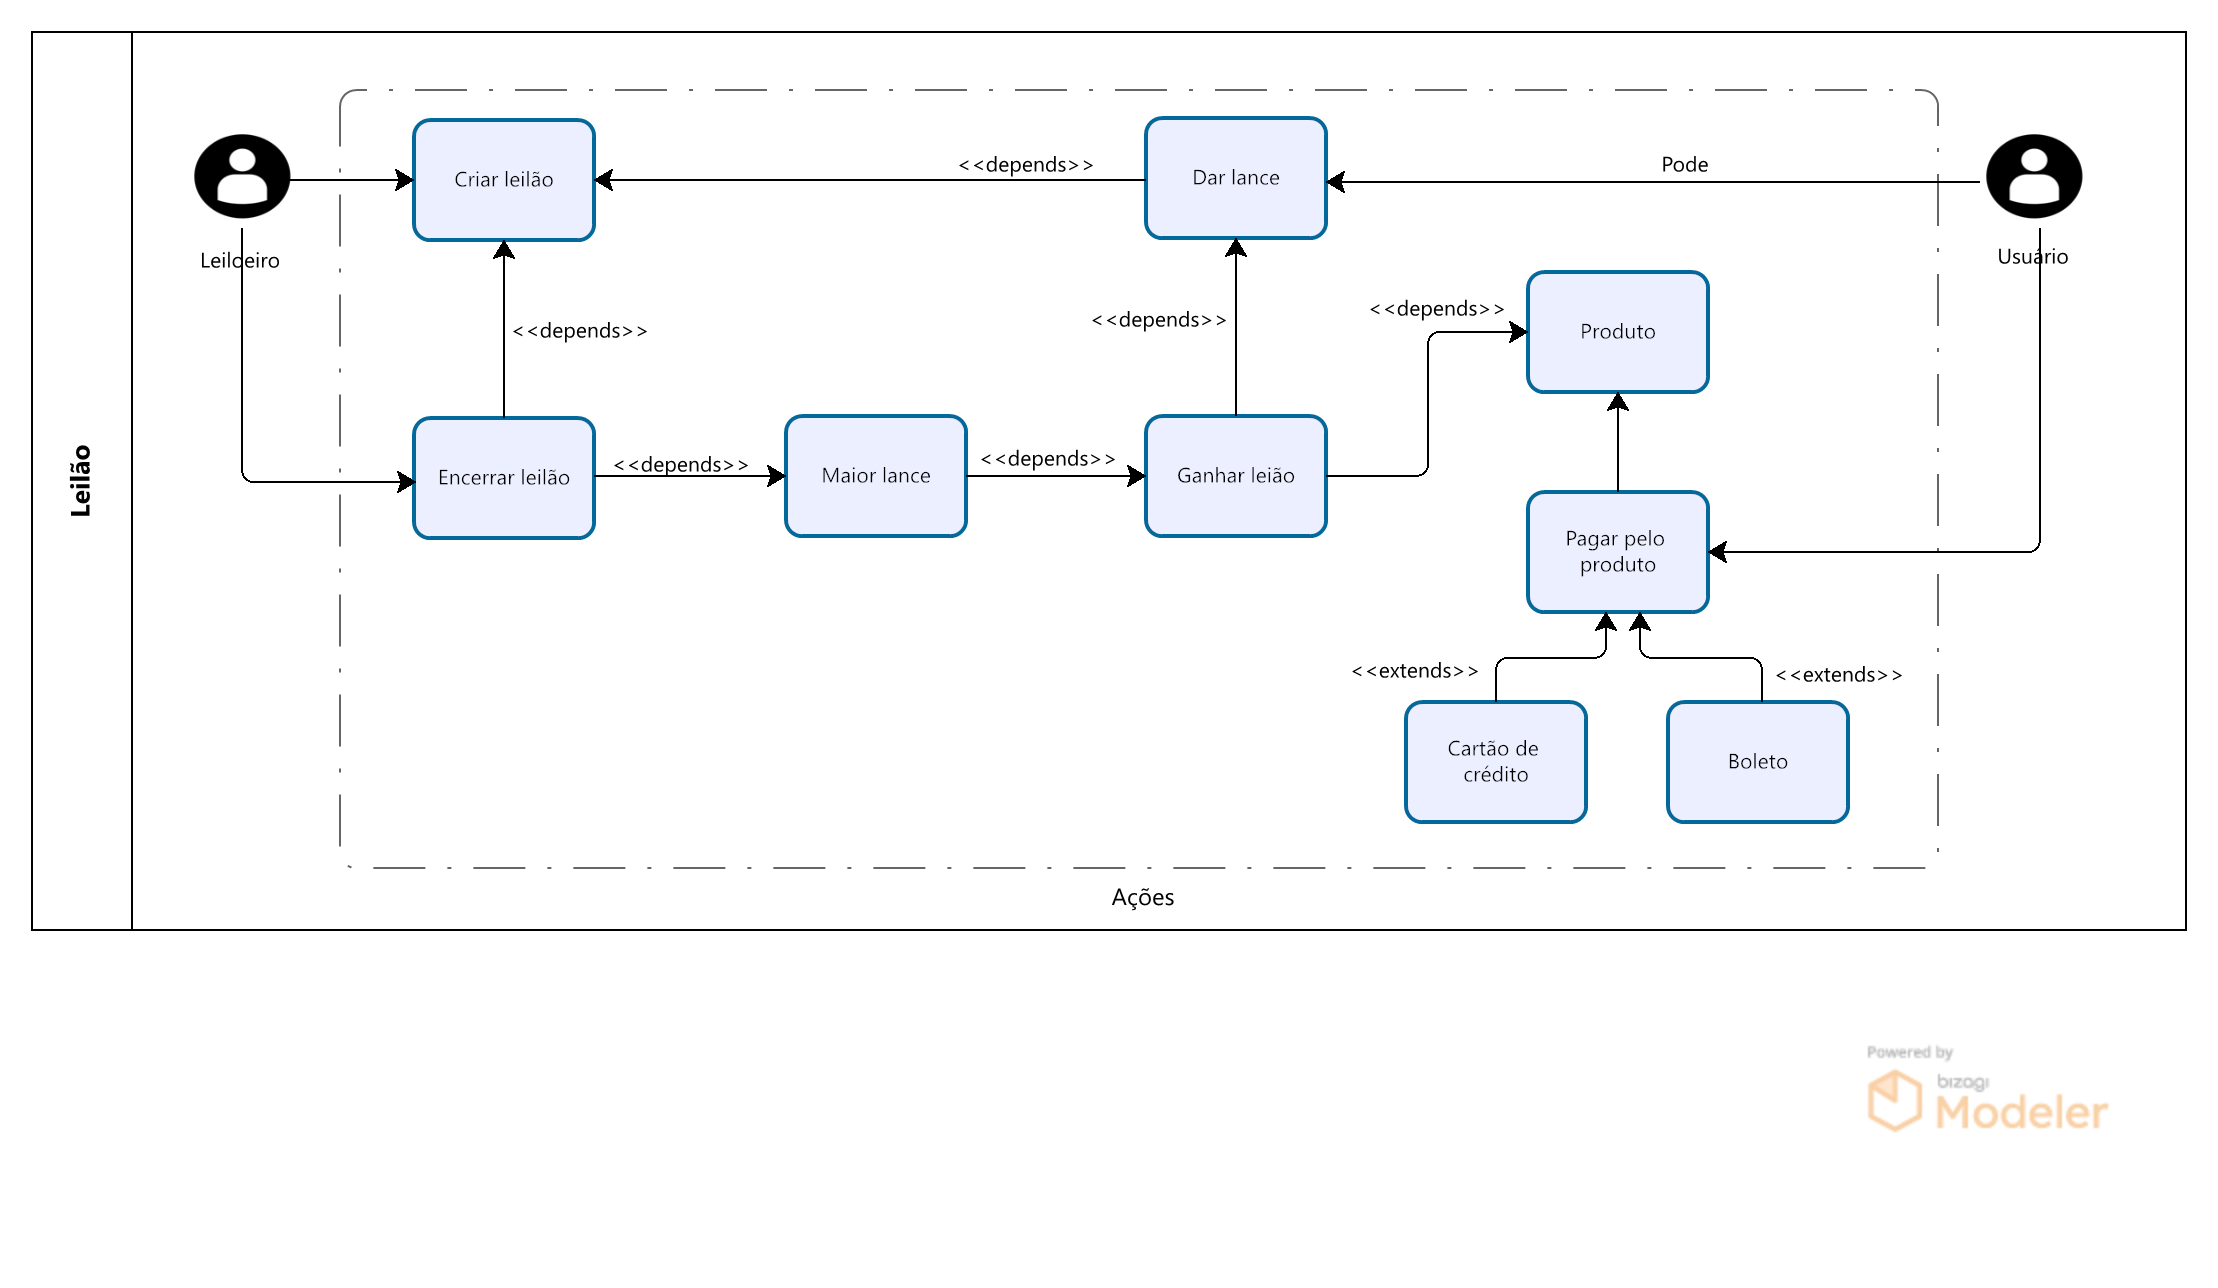 Diagrama de Caso de Uso - João, UML: modelagem de soluções